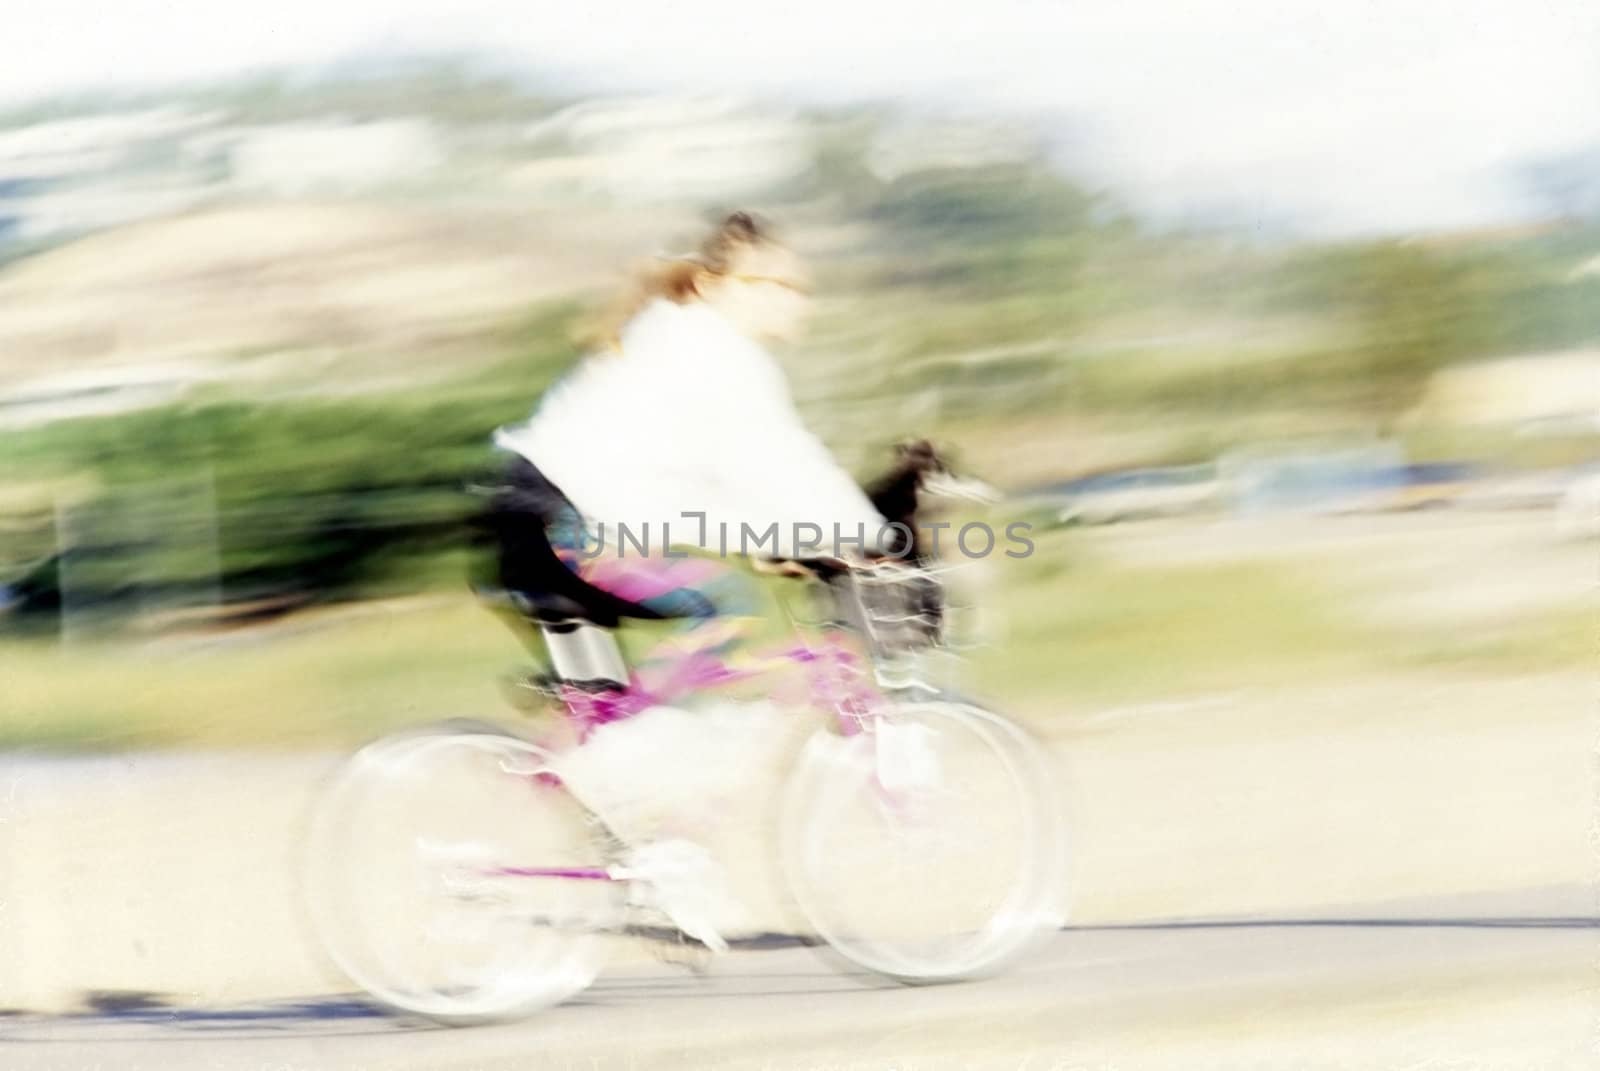 Bike in blur